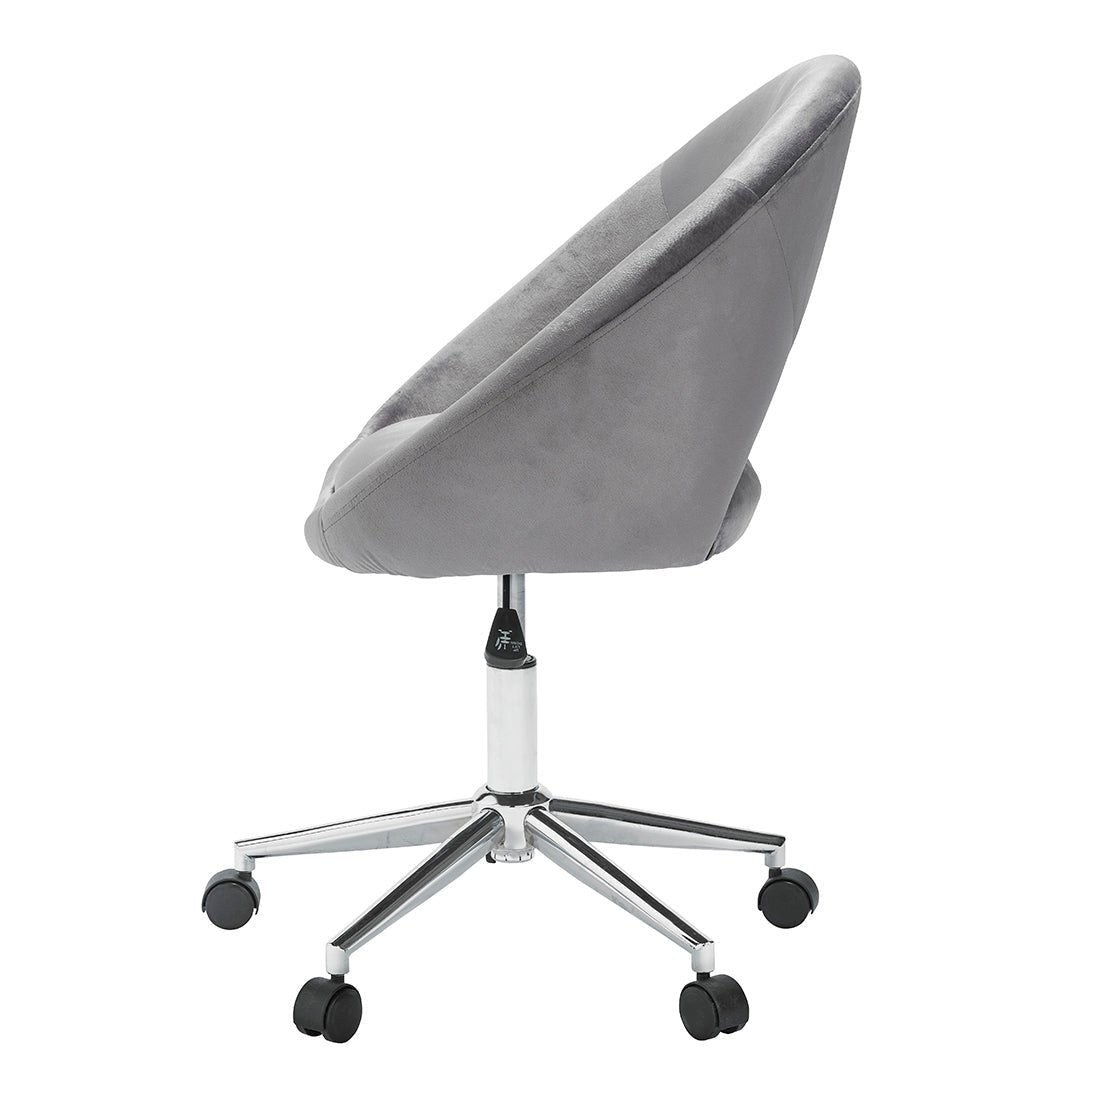 Skylar Office Chair